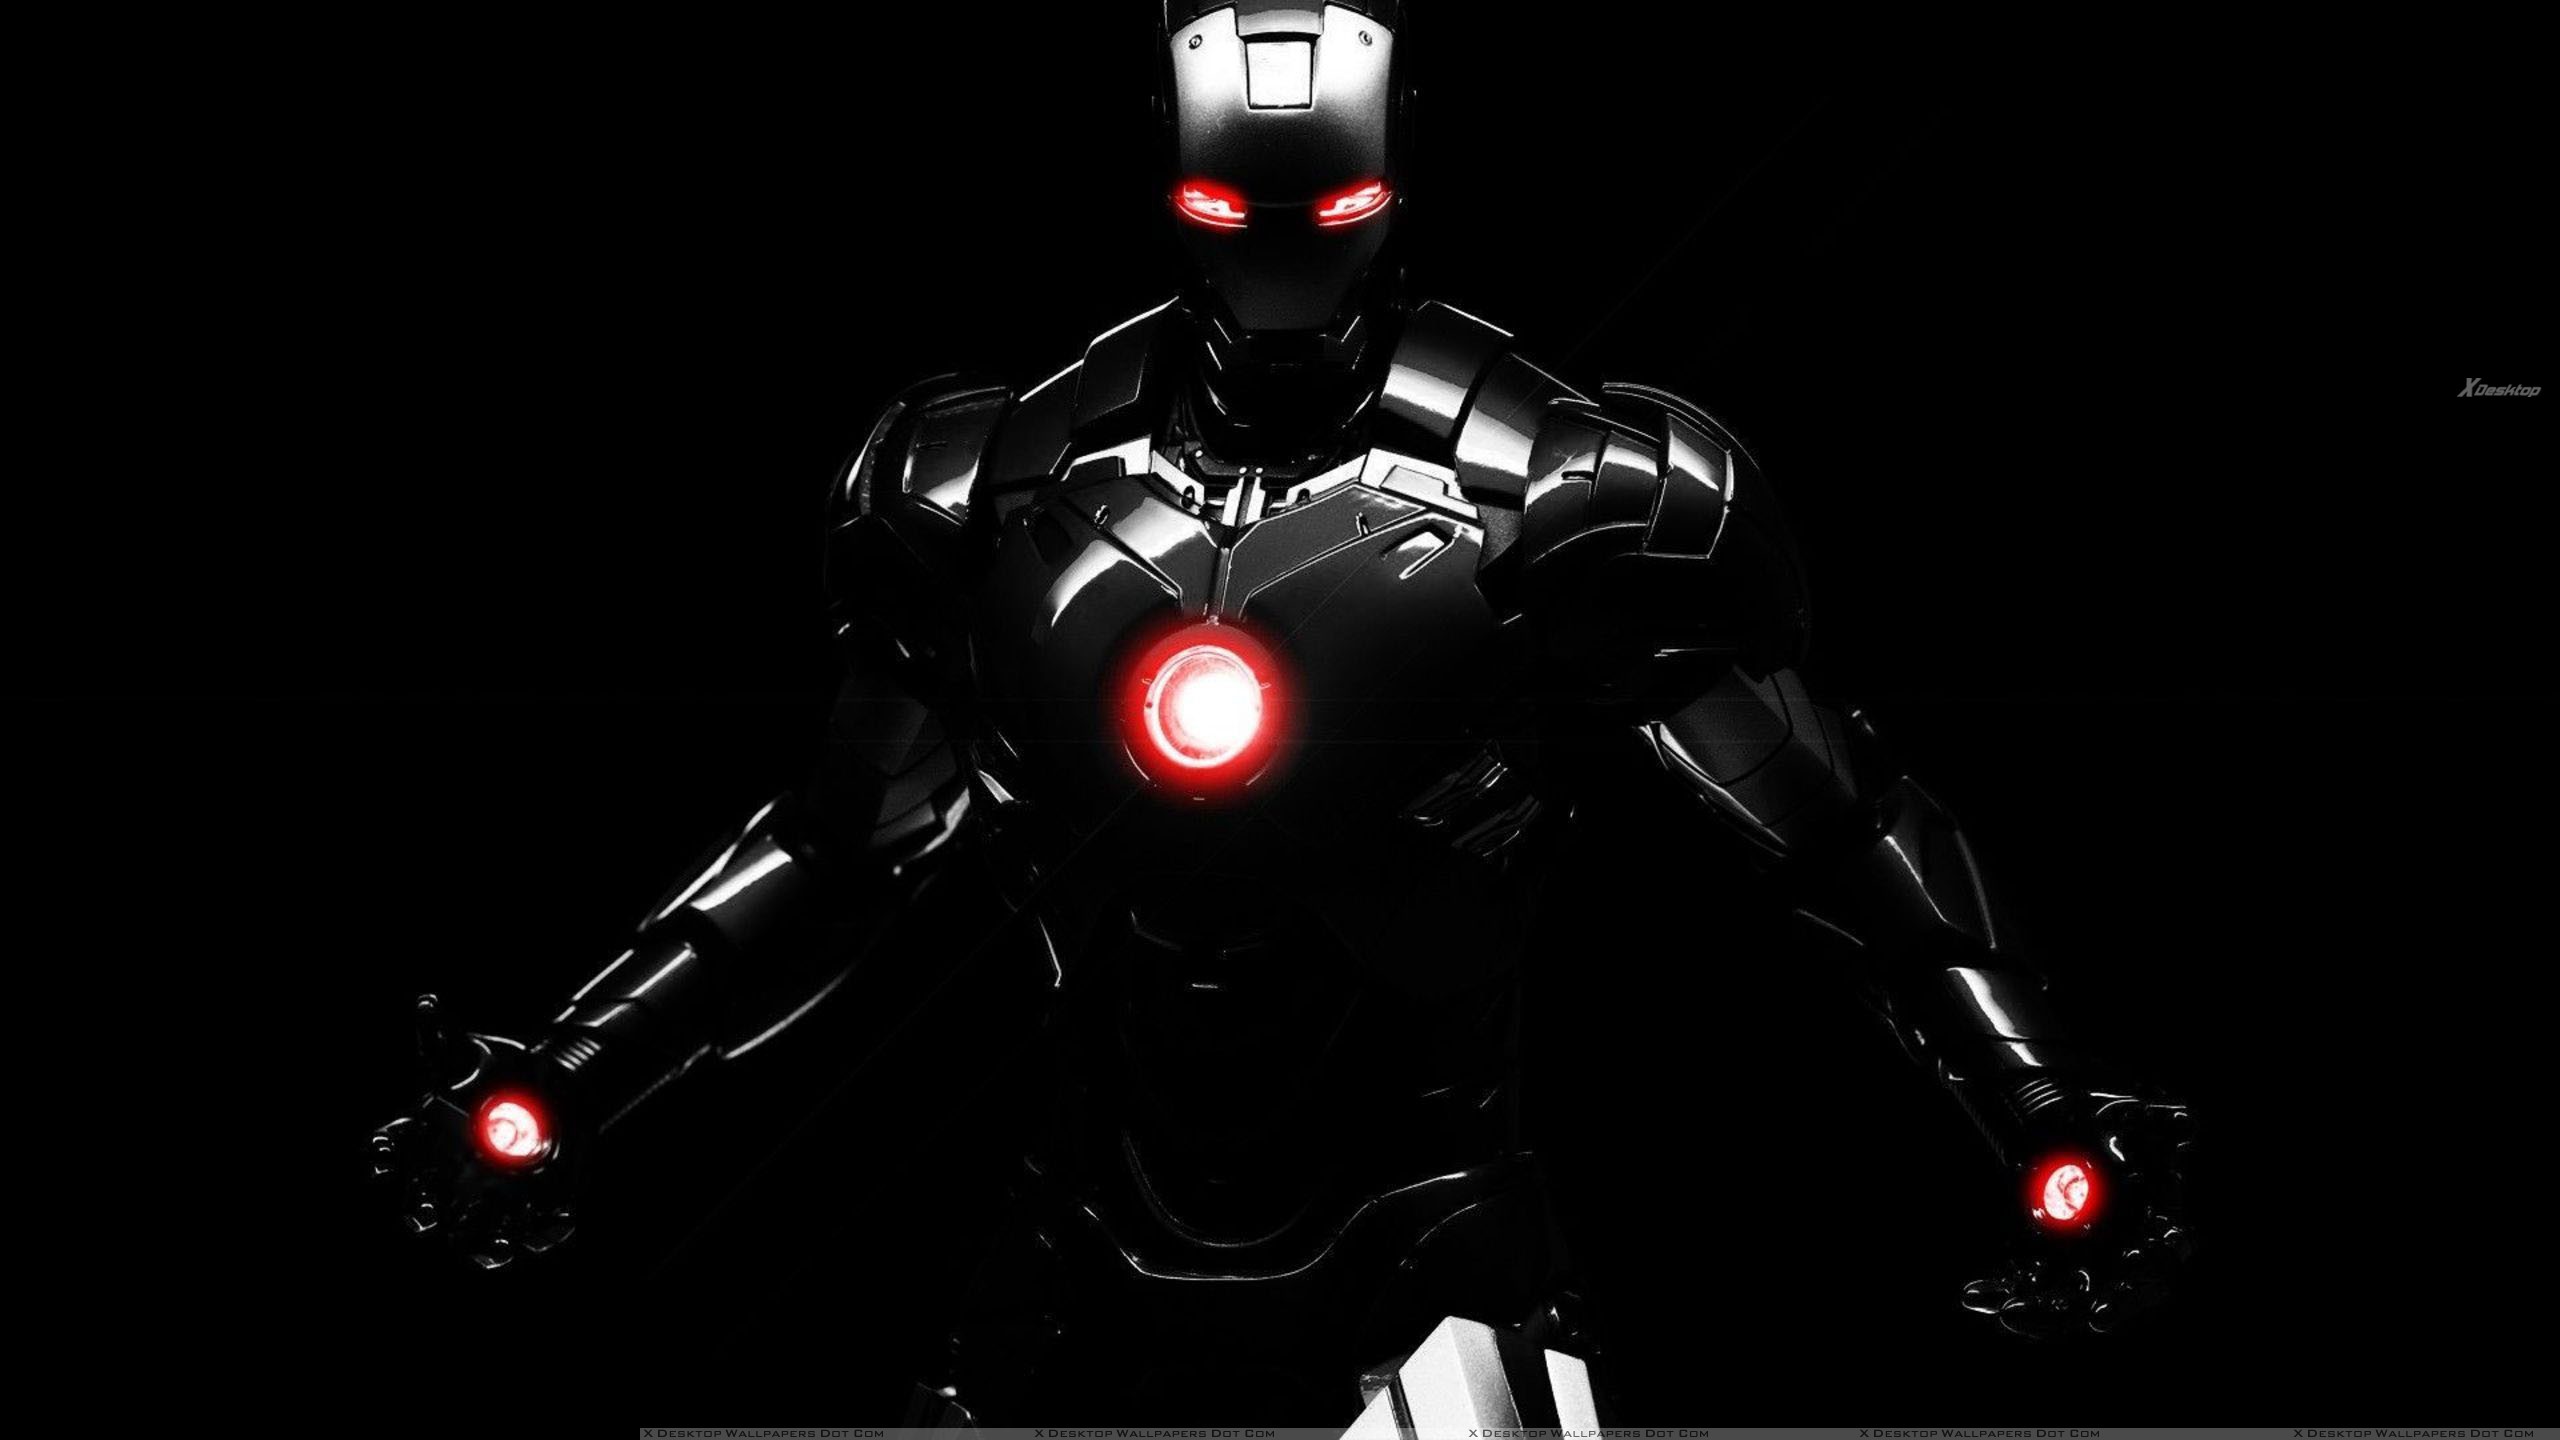 Hình nền áo giáp Iron Man sẽ giúp bạn tạo nên không gian làm việc đầy phong cách và sức mạnh. Với màu sắc tươi sáng và đầy sức sống, hình nền này sẽ giúp bạn thoải mái và sáng tạo hơn trong công việc hàng ngày. Hãy cùng chiêm ngưỡng nhé!